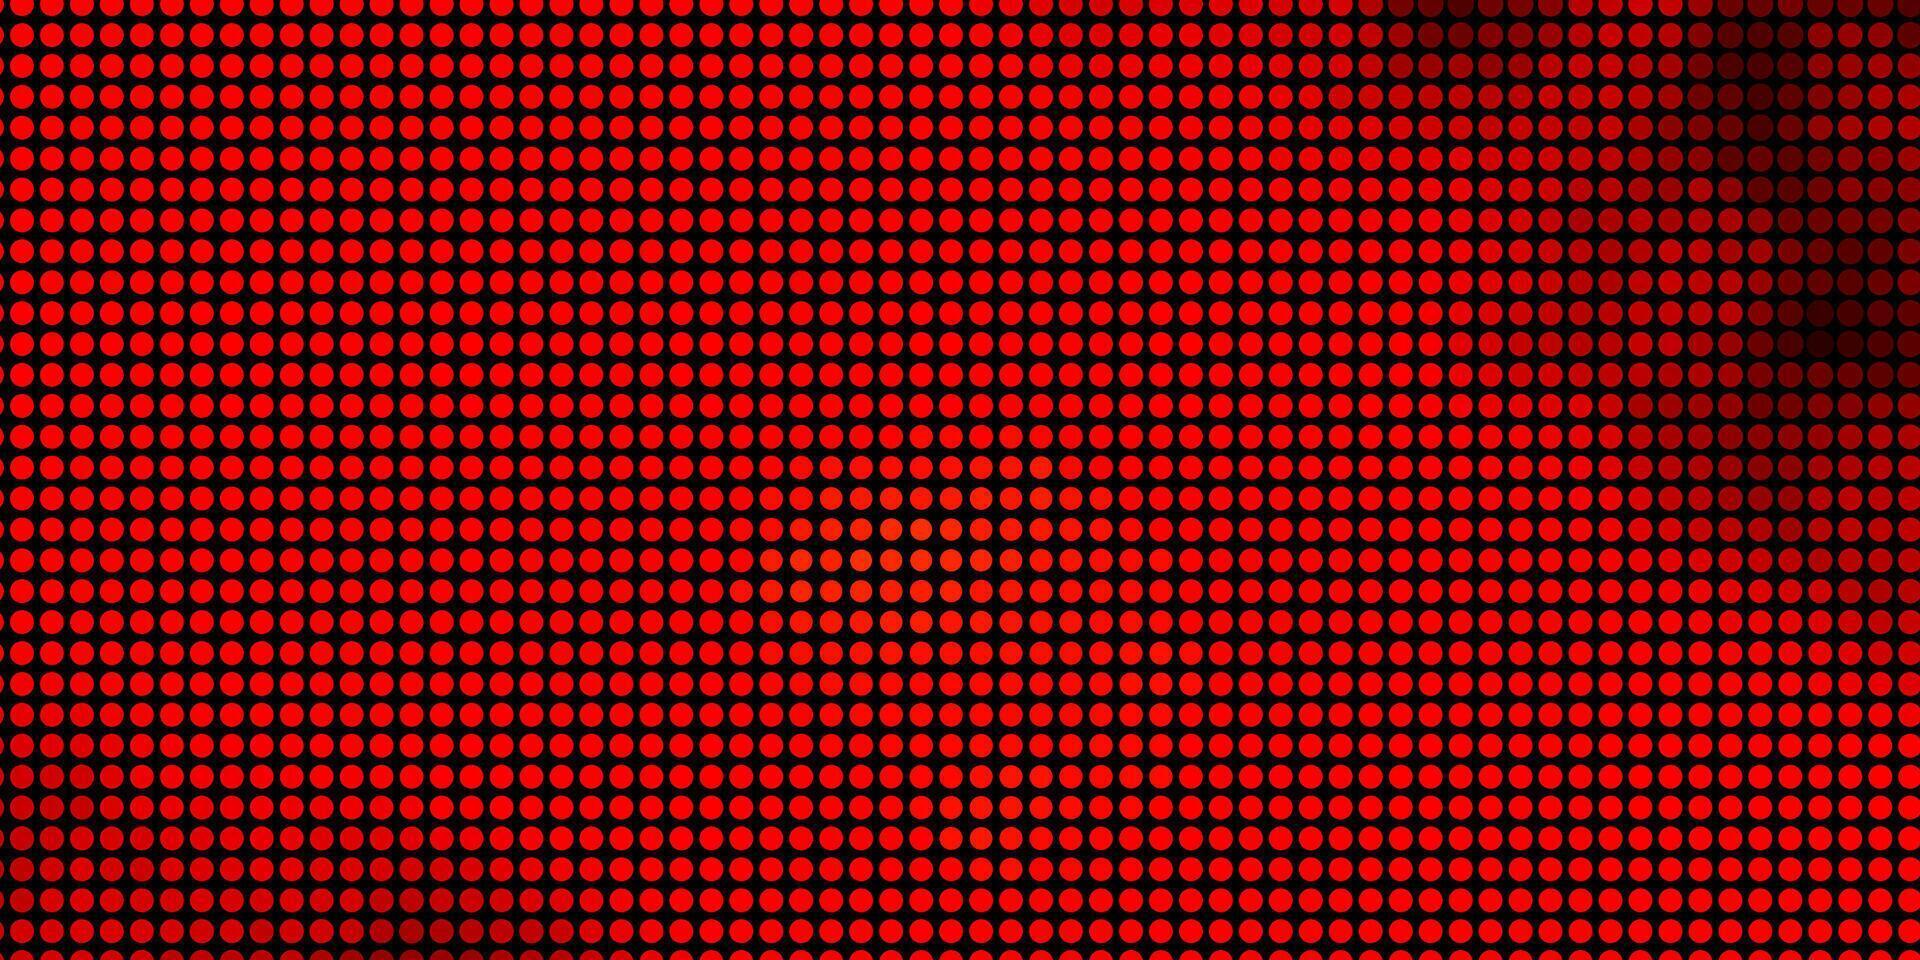 mörk röd vektor bakgrund med fläckar.